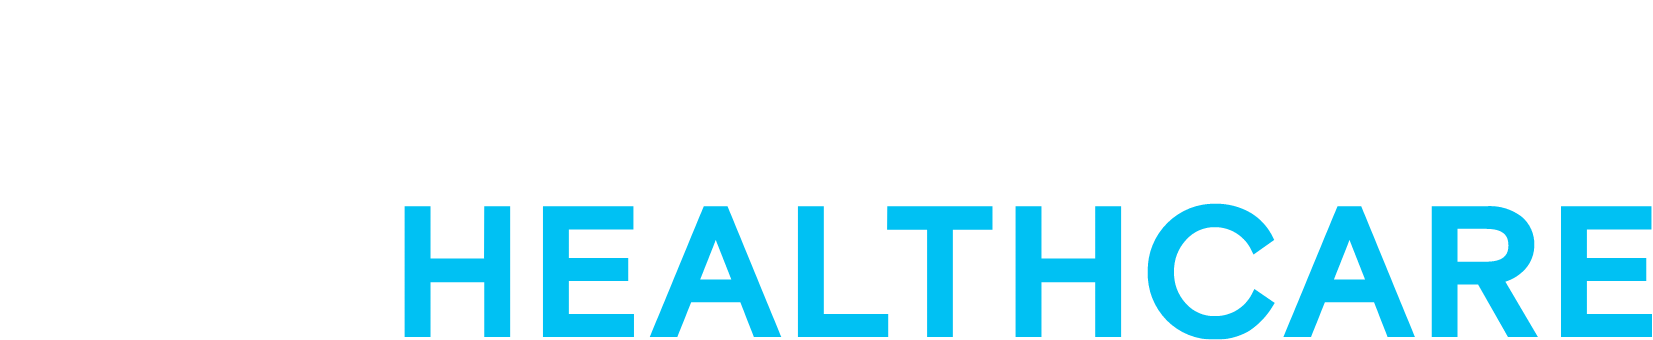 Definitive Healthcare logo large for dark backgrounds (transparent PNG)